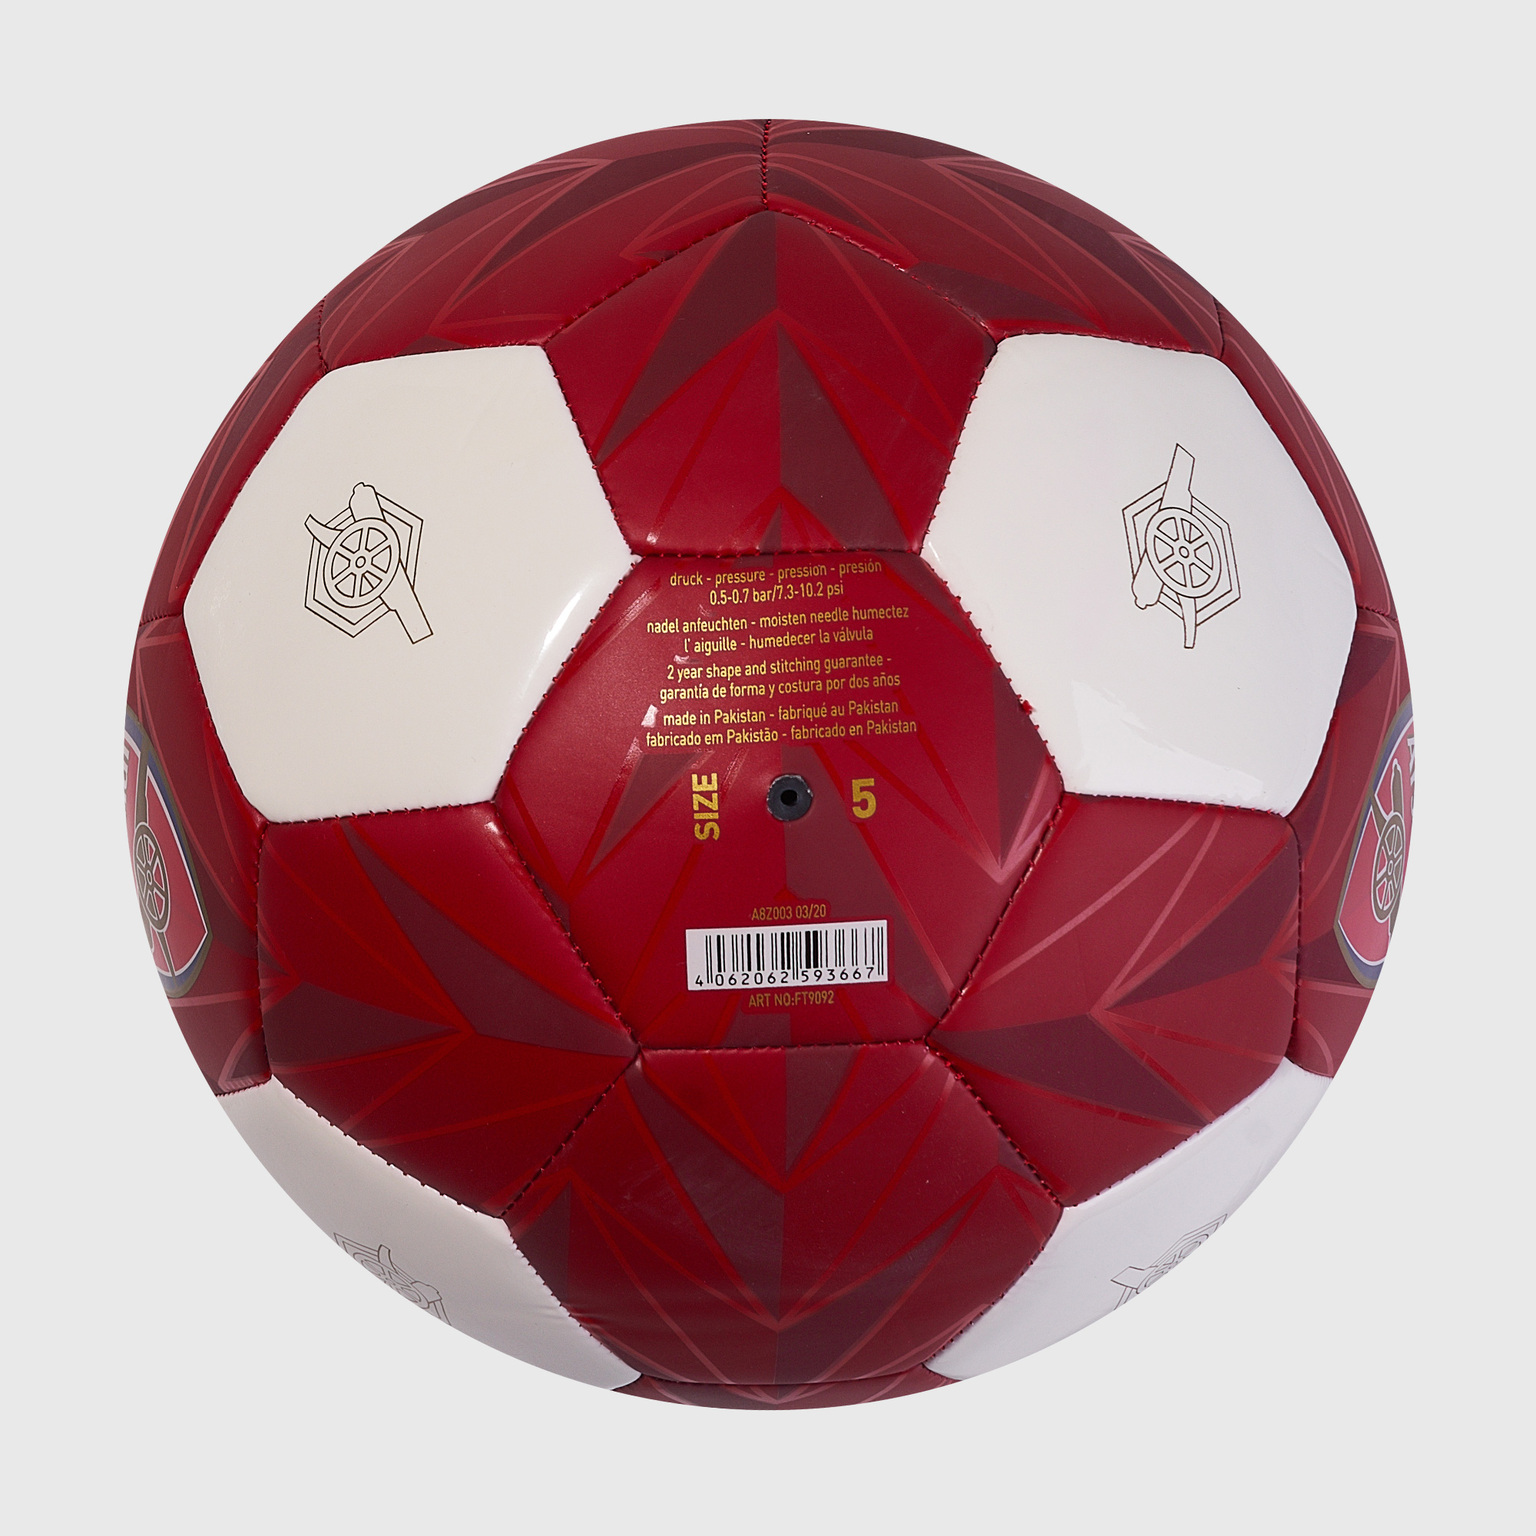 Футбольный мяч Adidas Arsenal FT9092